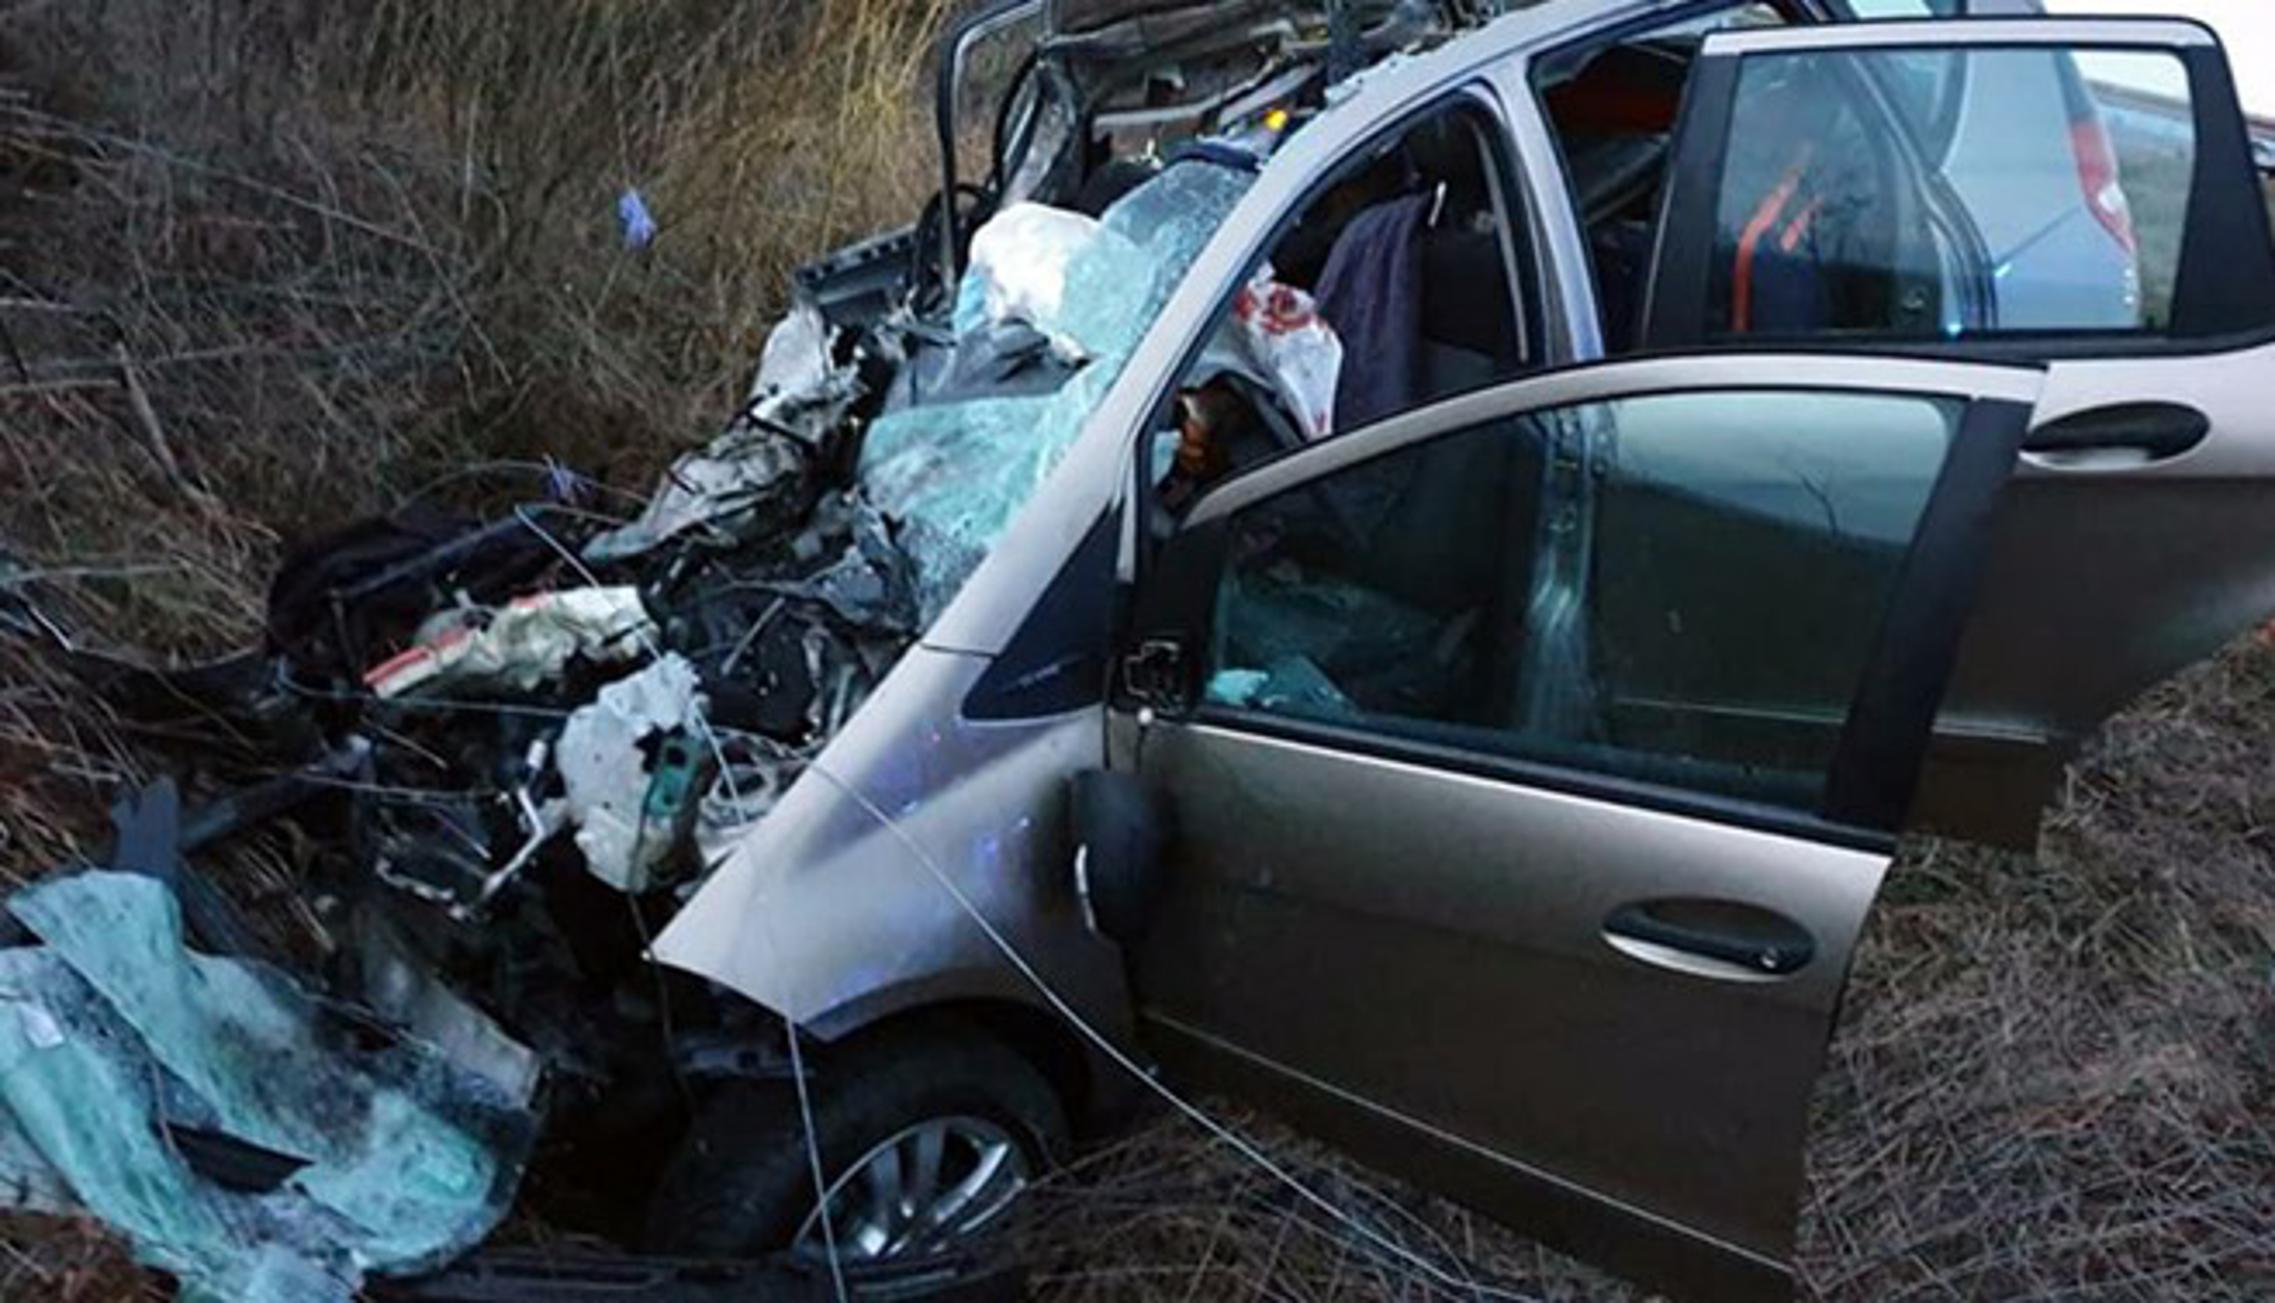 U prometnoj nesreći na autocesti kod Starog Petrovog Sela poginuo je 34-godišnjak